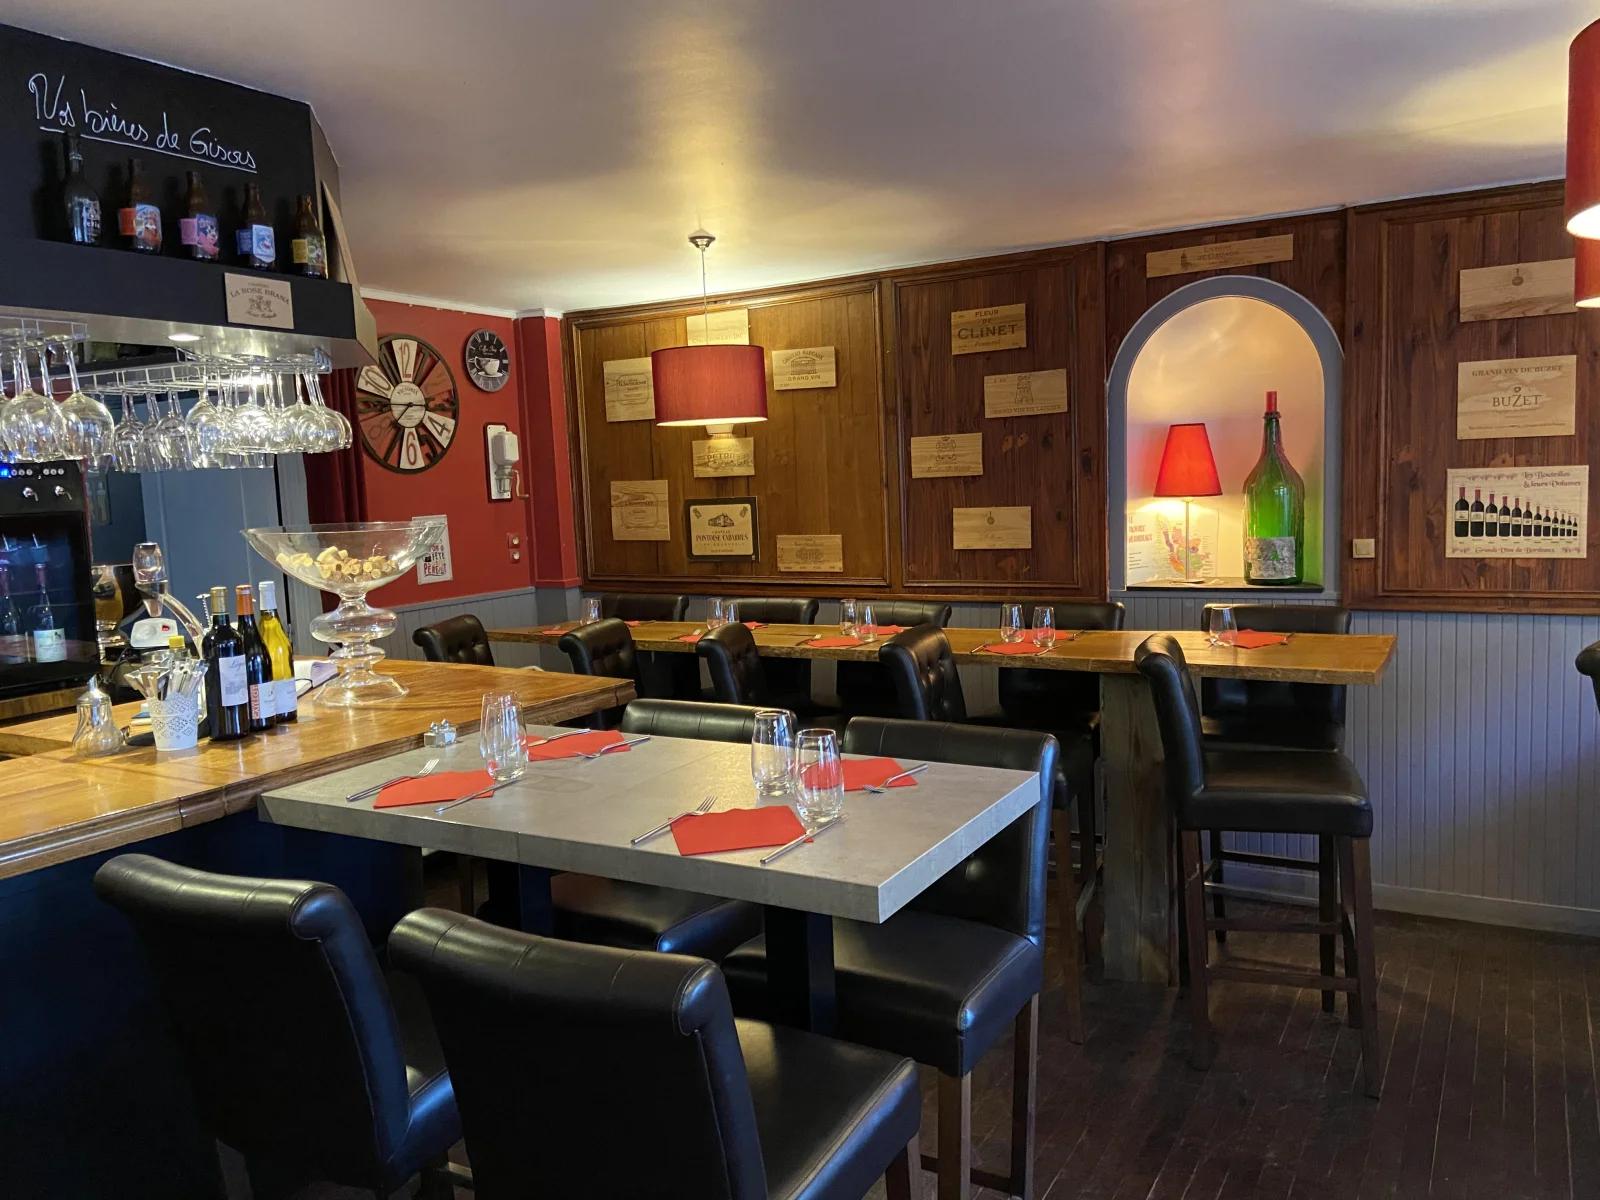 Salle de réunion dans Restaurant, bar à vin avec sa terrasse - 5